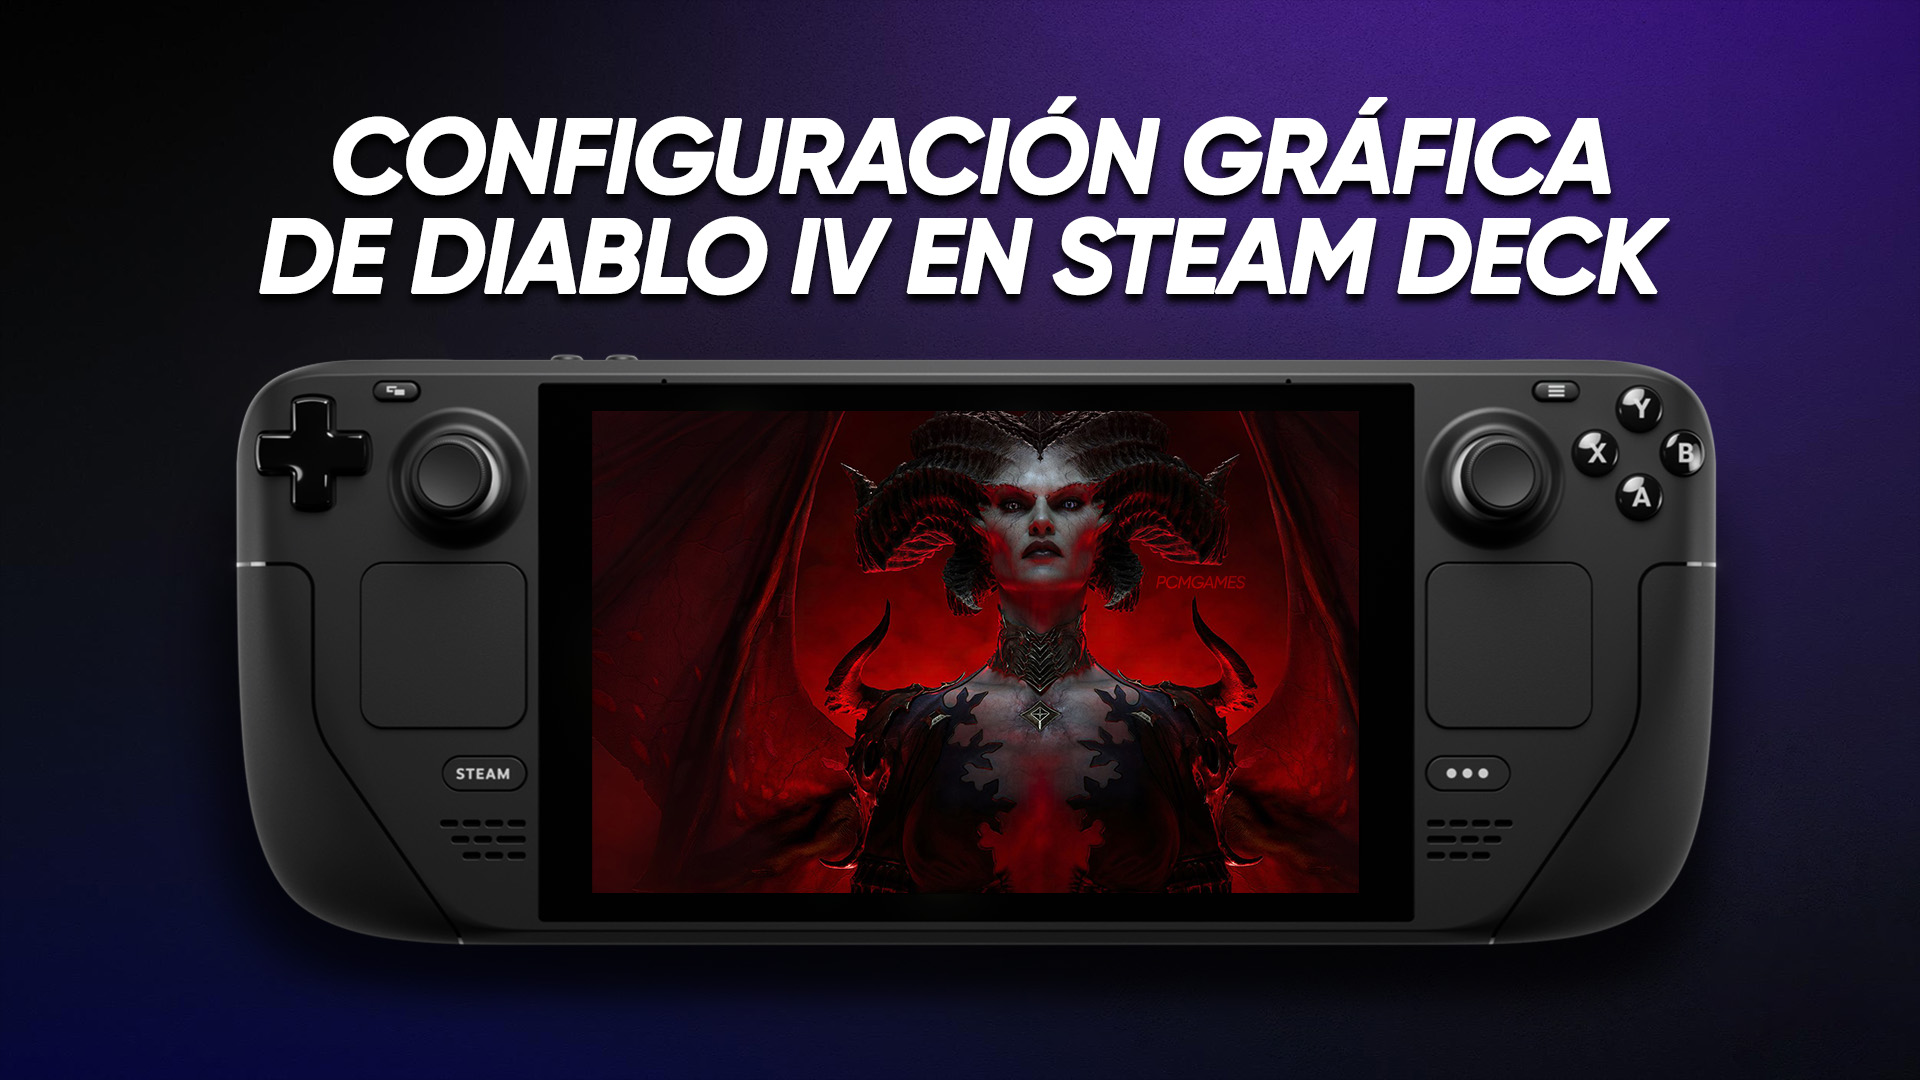 Diablo IV en Steam Deck